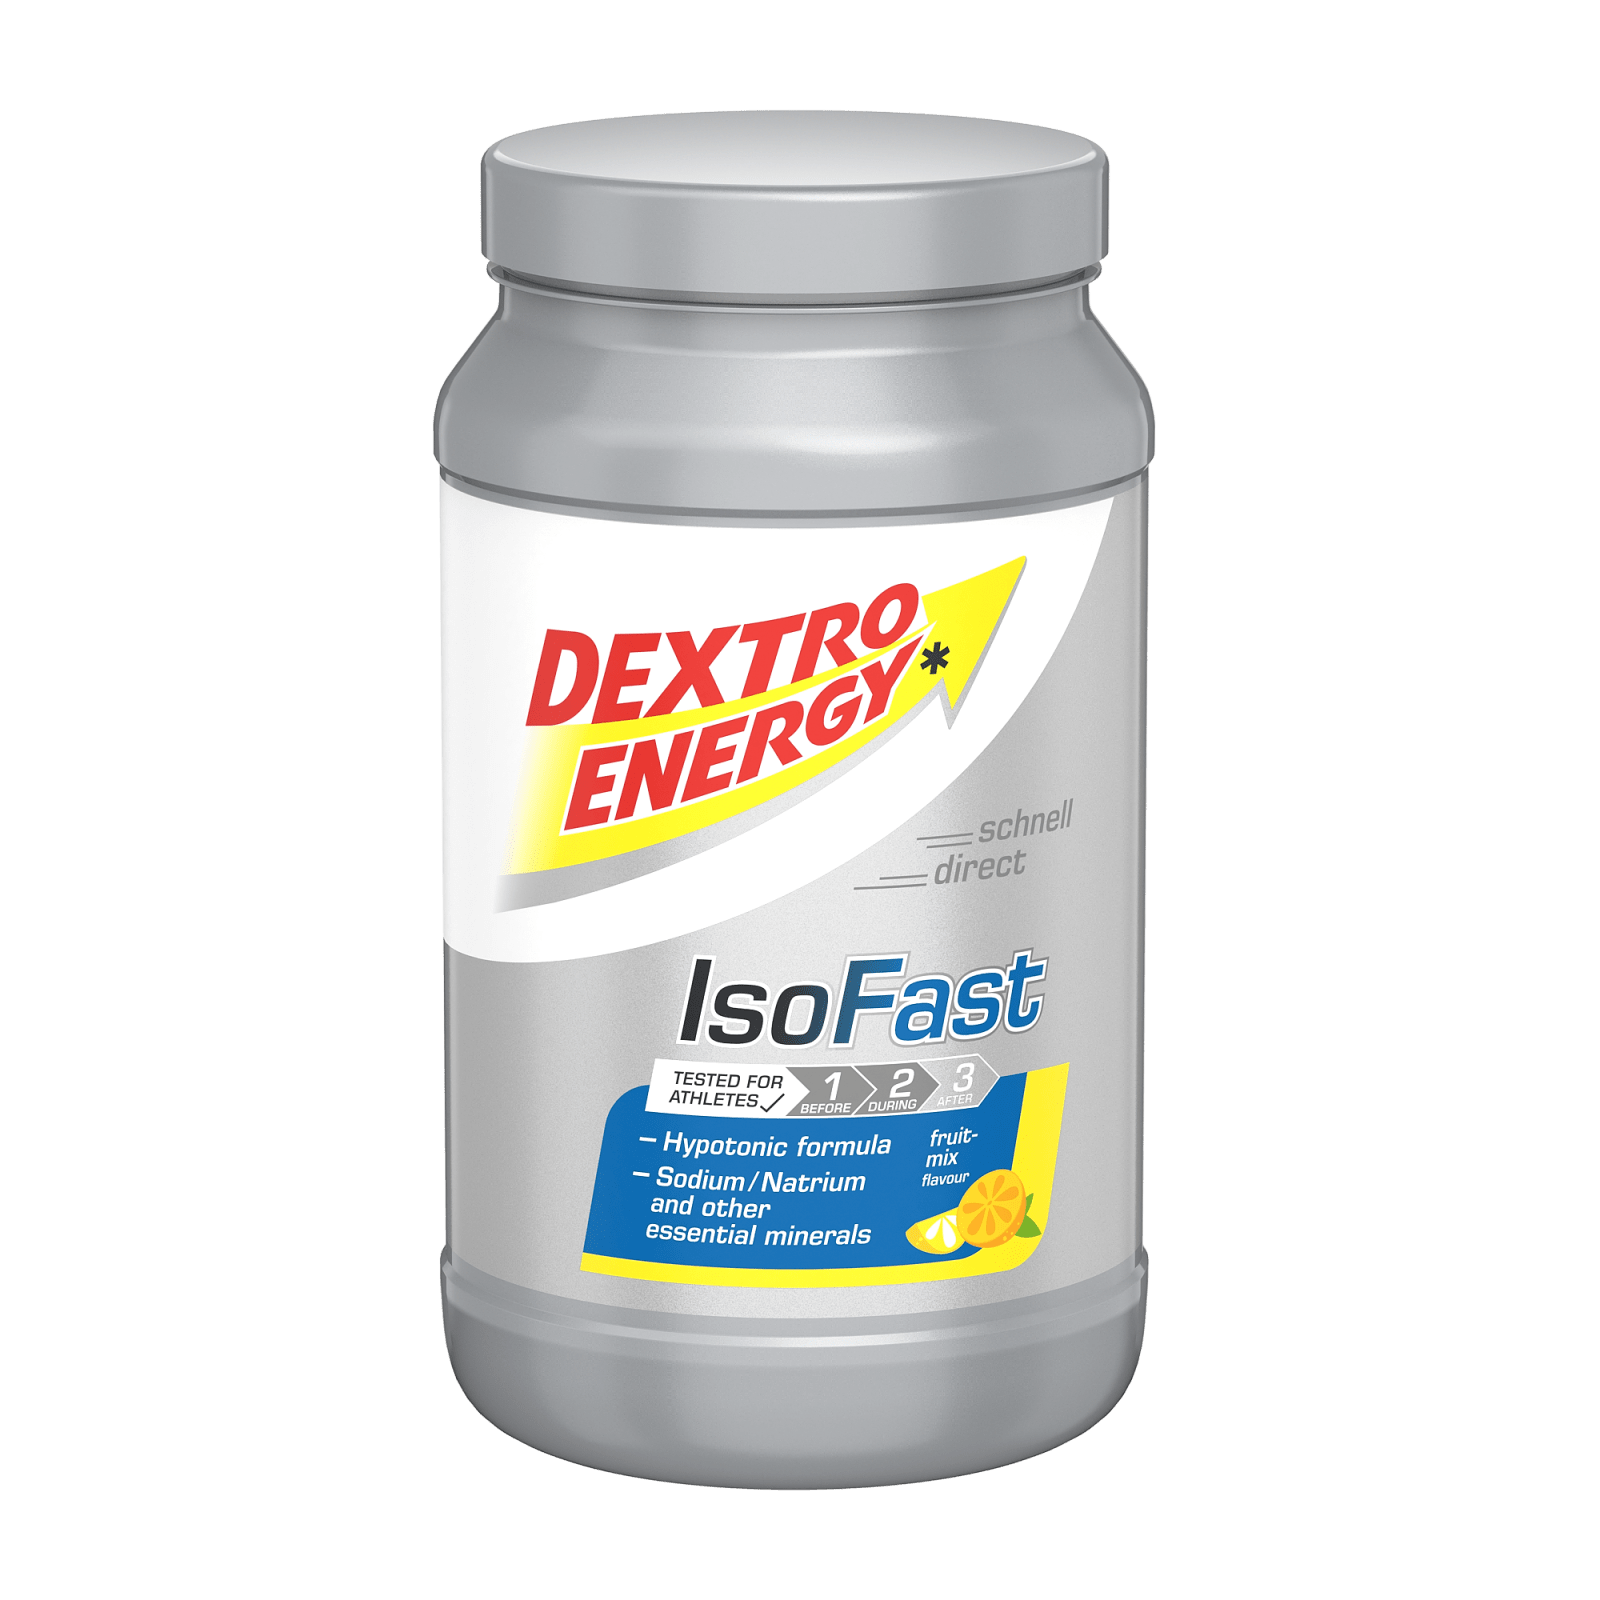 kleermaker elleboog applaus IsoFast Drink (1120g) van Dextro Energy kopen | Bodylab Shop